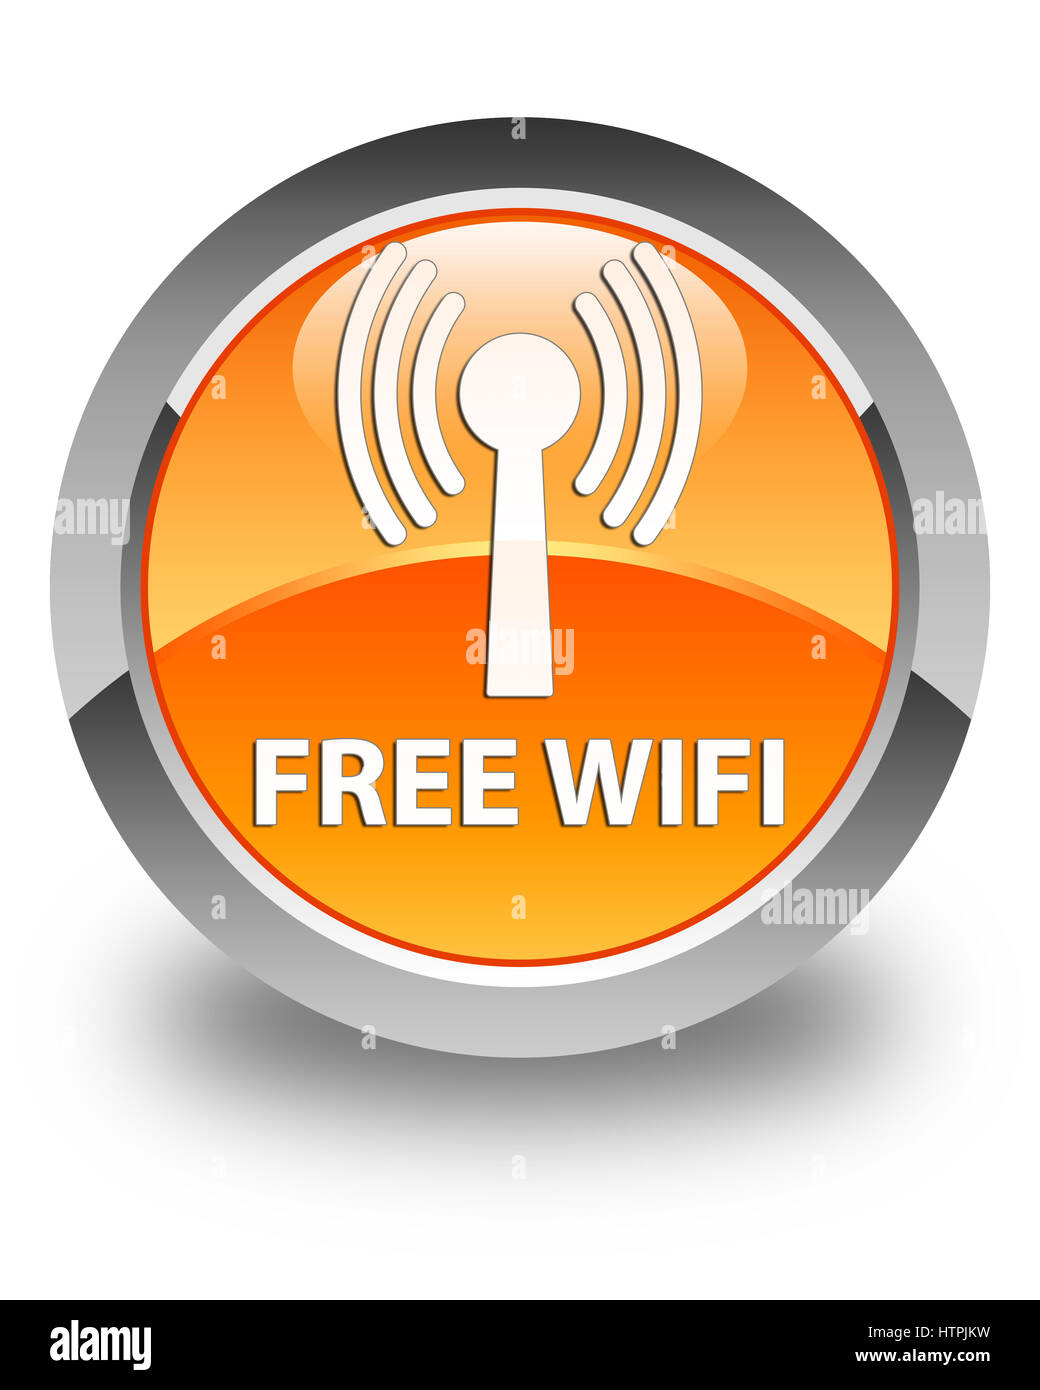 Free wifi (wlan) réseau isolé sur bouton rond orange brillant abstract illustration Banque D'Images